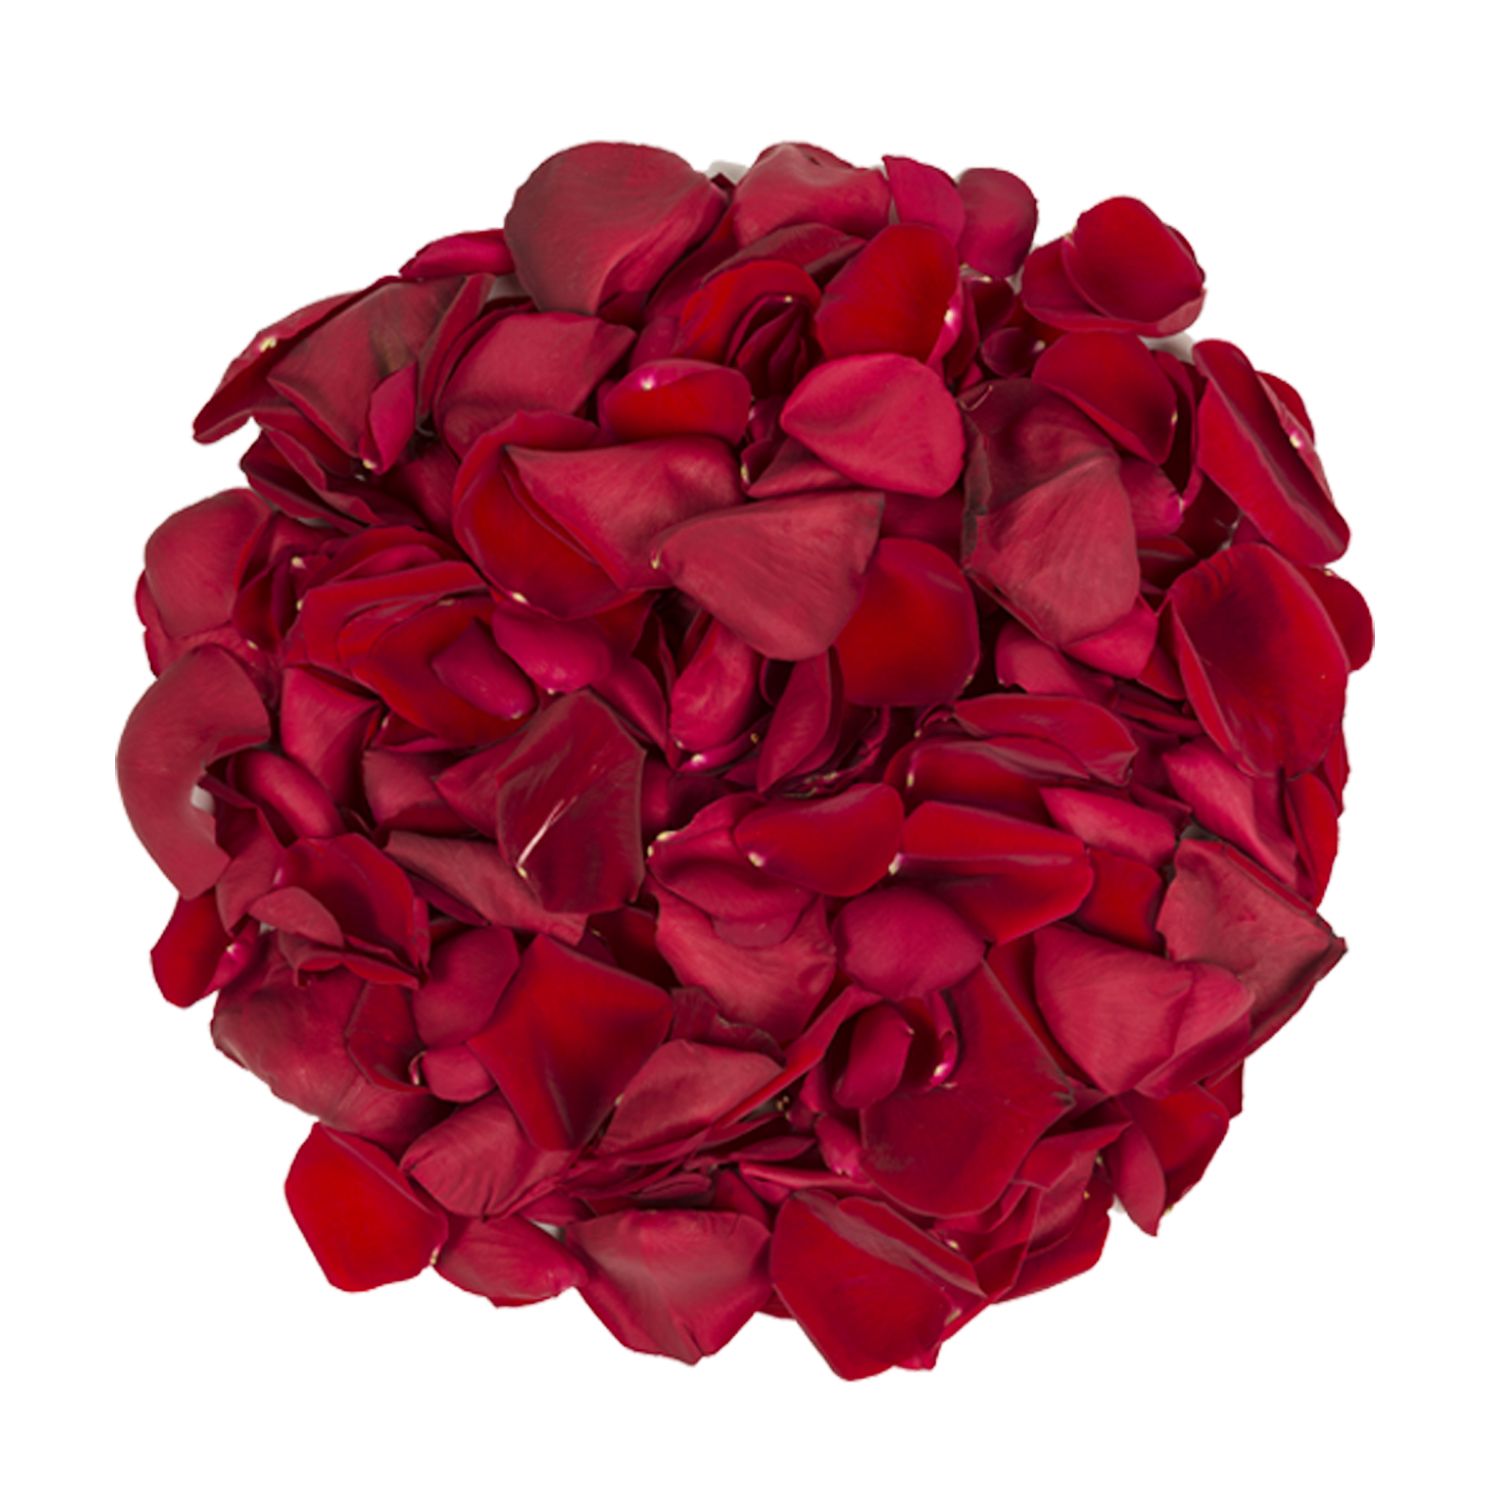 5,000 Rose Petals - Hot Pink